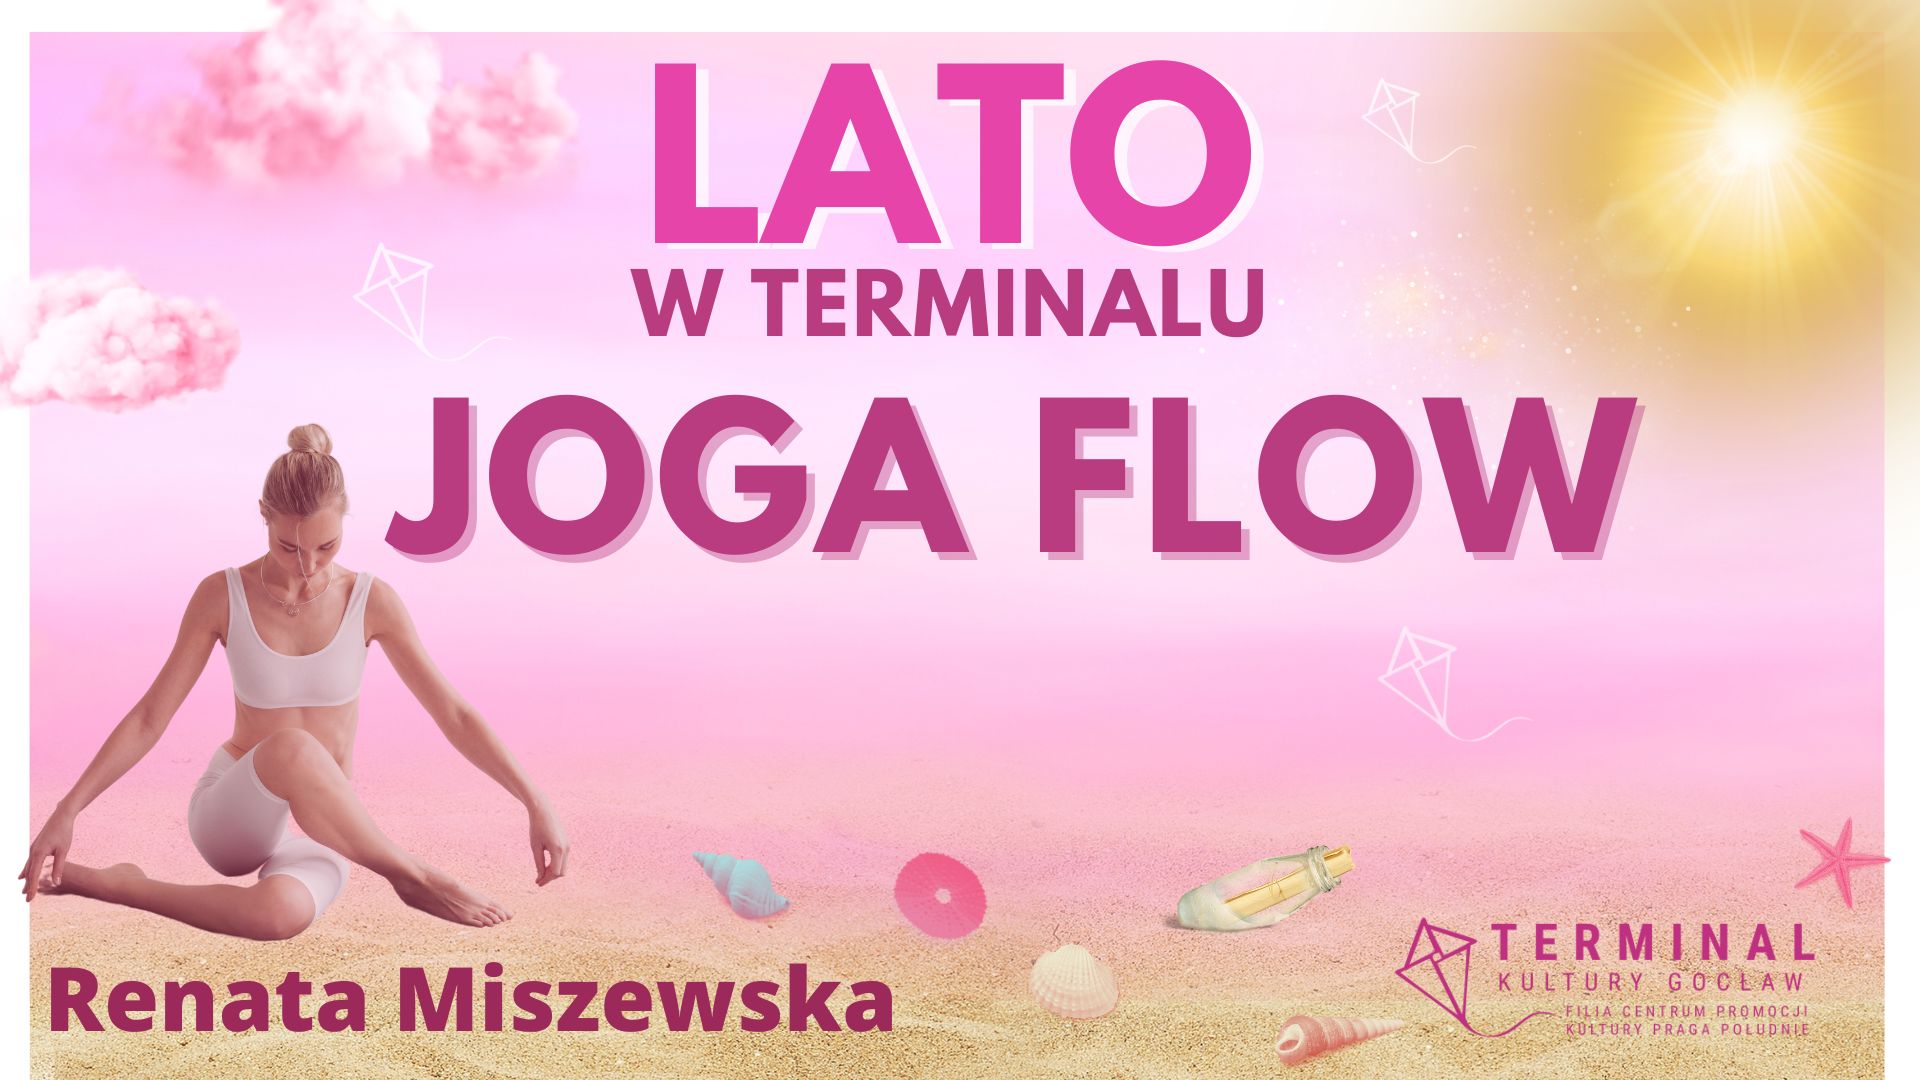 LATO - JOGA FLOW Renata Miszewska